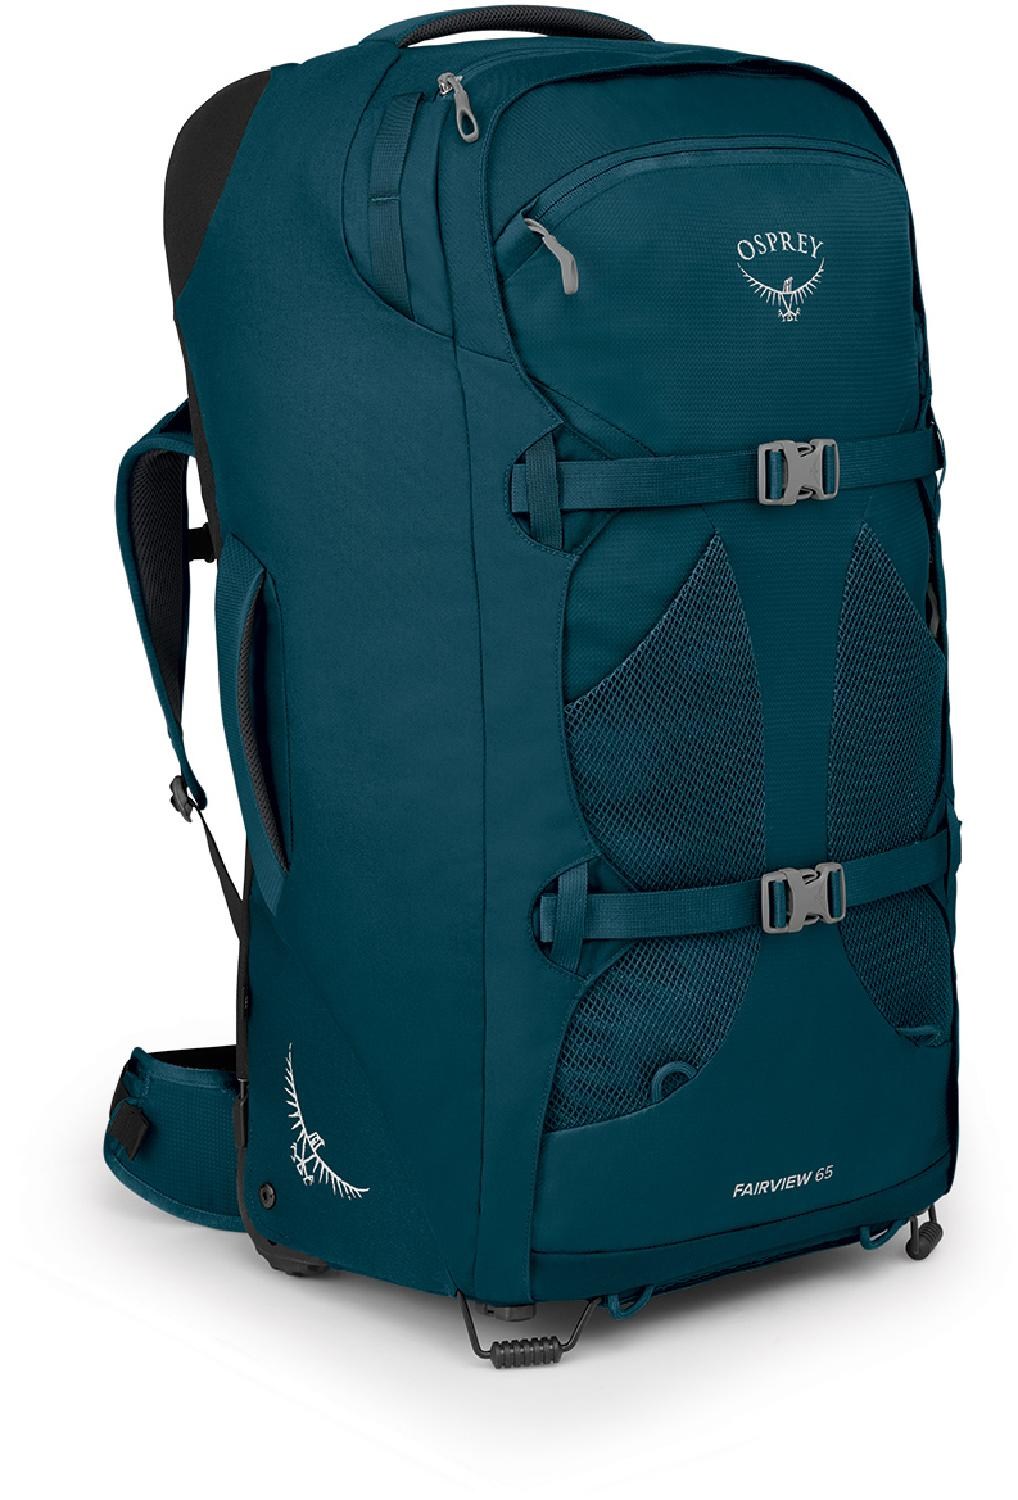 Дорожный рюкзак Fairview 65 на колесиках — женский Osprey, синий рюкзак osprey farpoint 55 reise 65 cm цвет tunnel vision grey